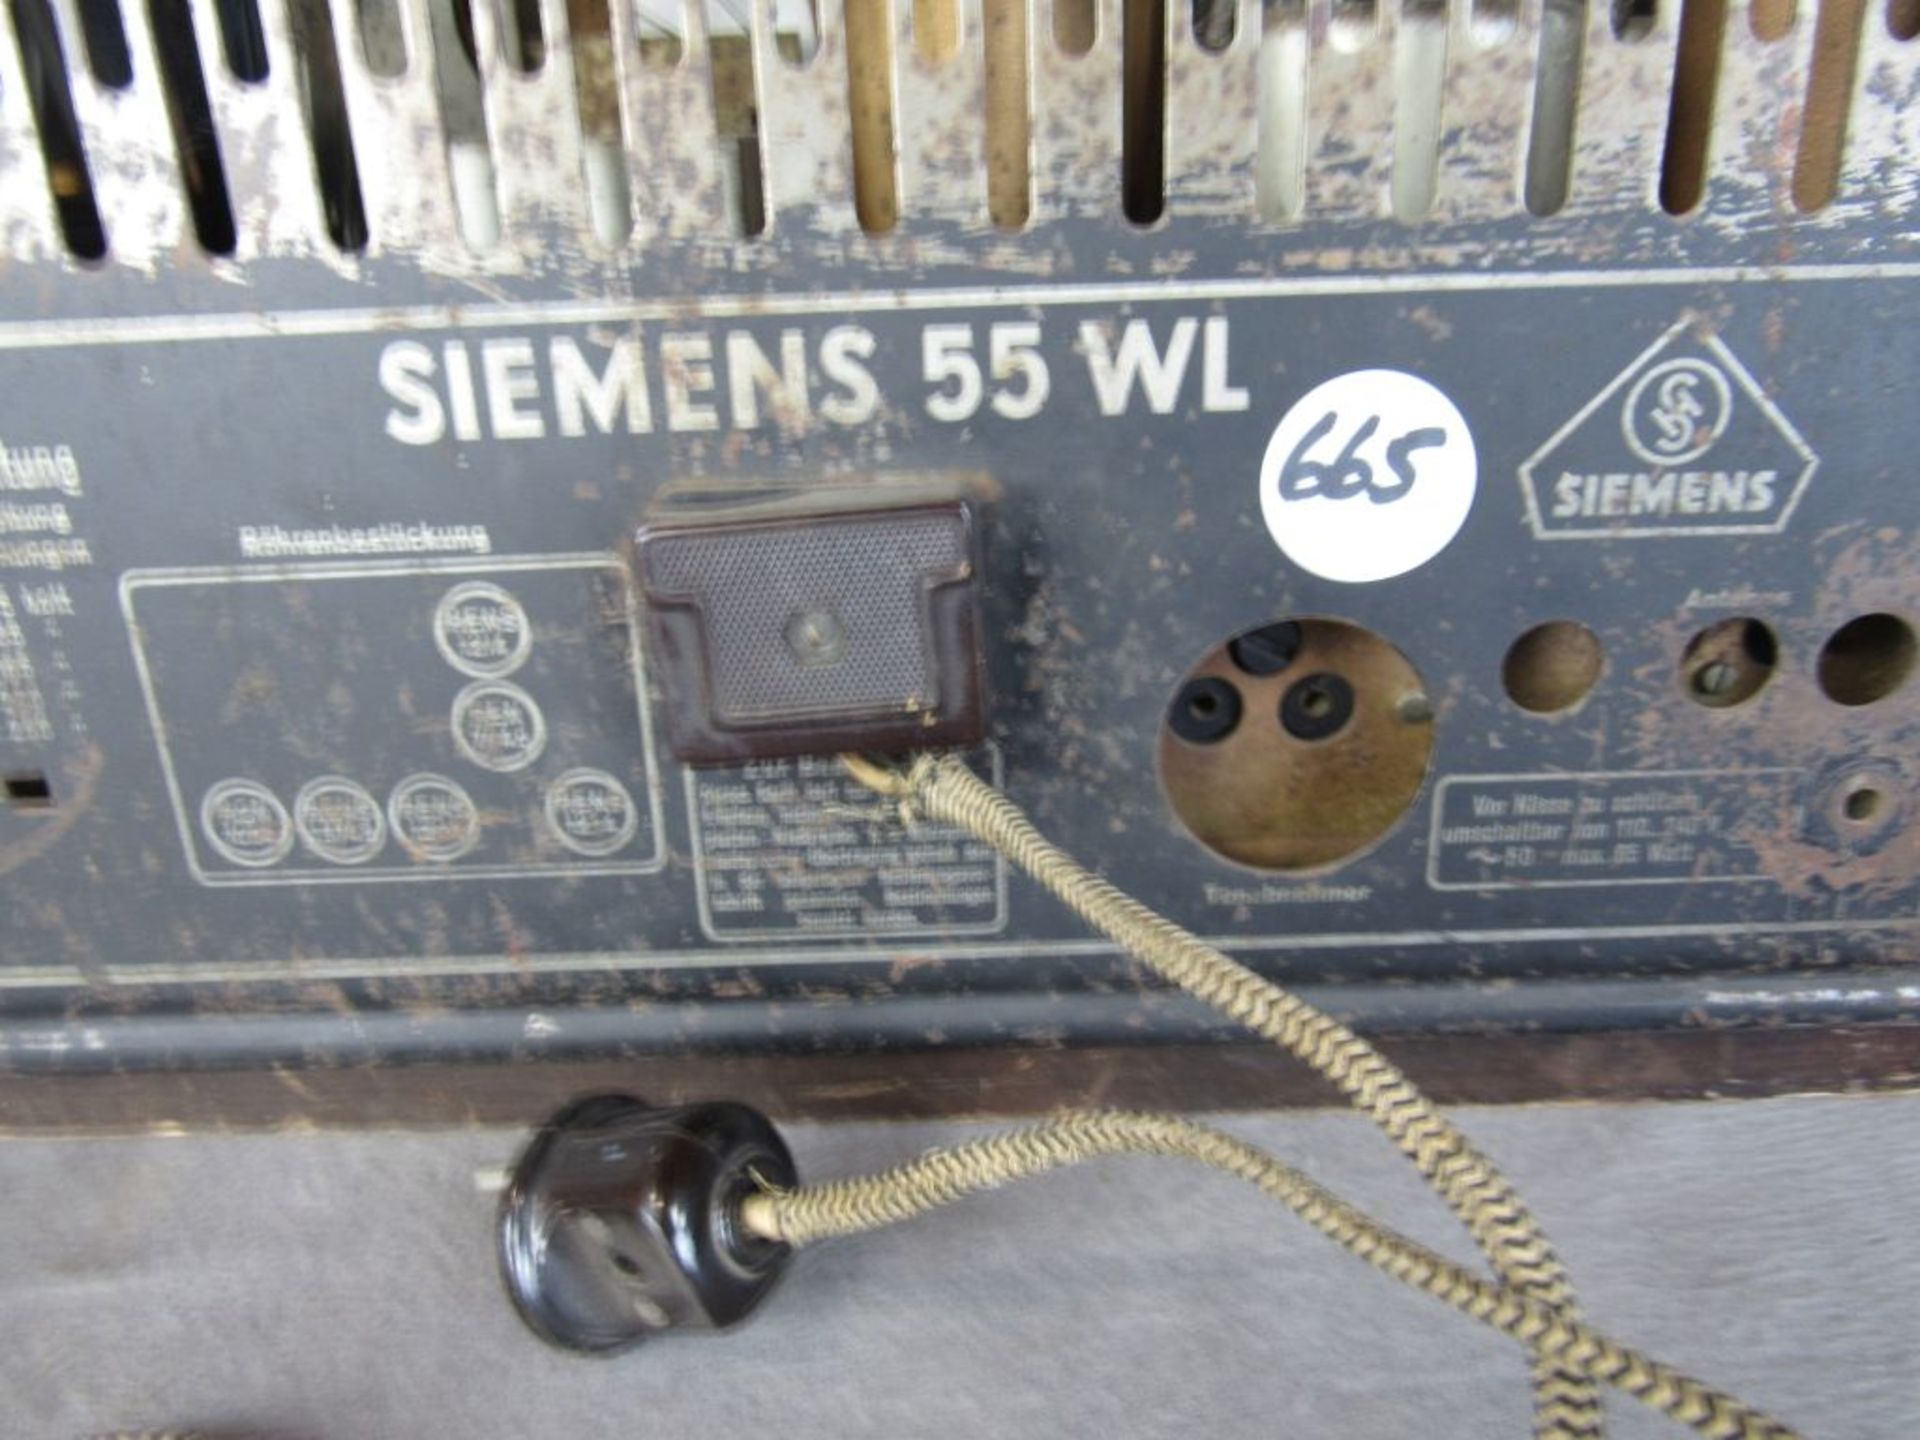 Röhrenradio Siemens 55WL von 1932-33 45x28x55cm - Bild 5 aus 6